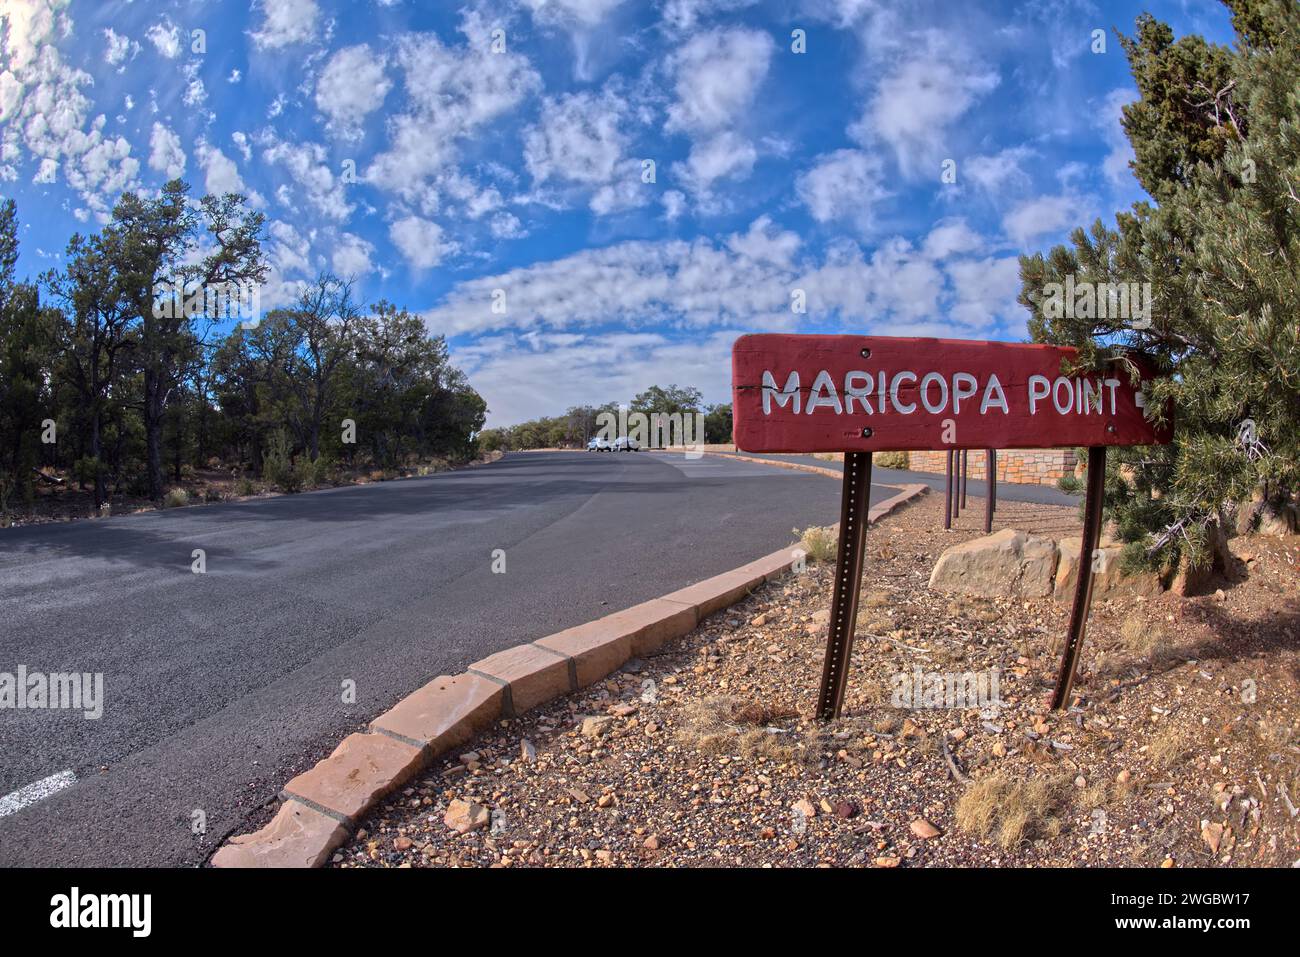 Entry footpath to Maricopa Point, Grand Canyon, Arizona, USA Stock Photo